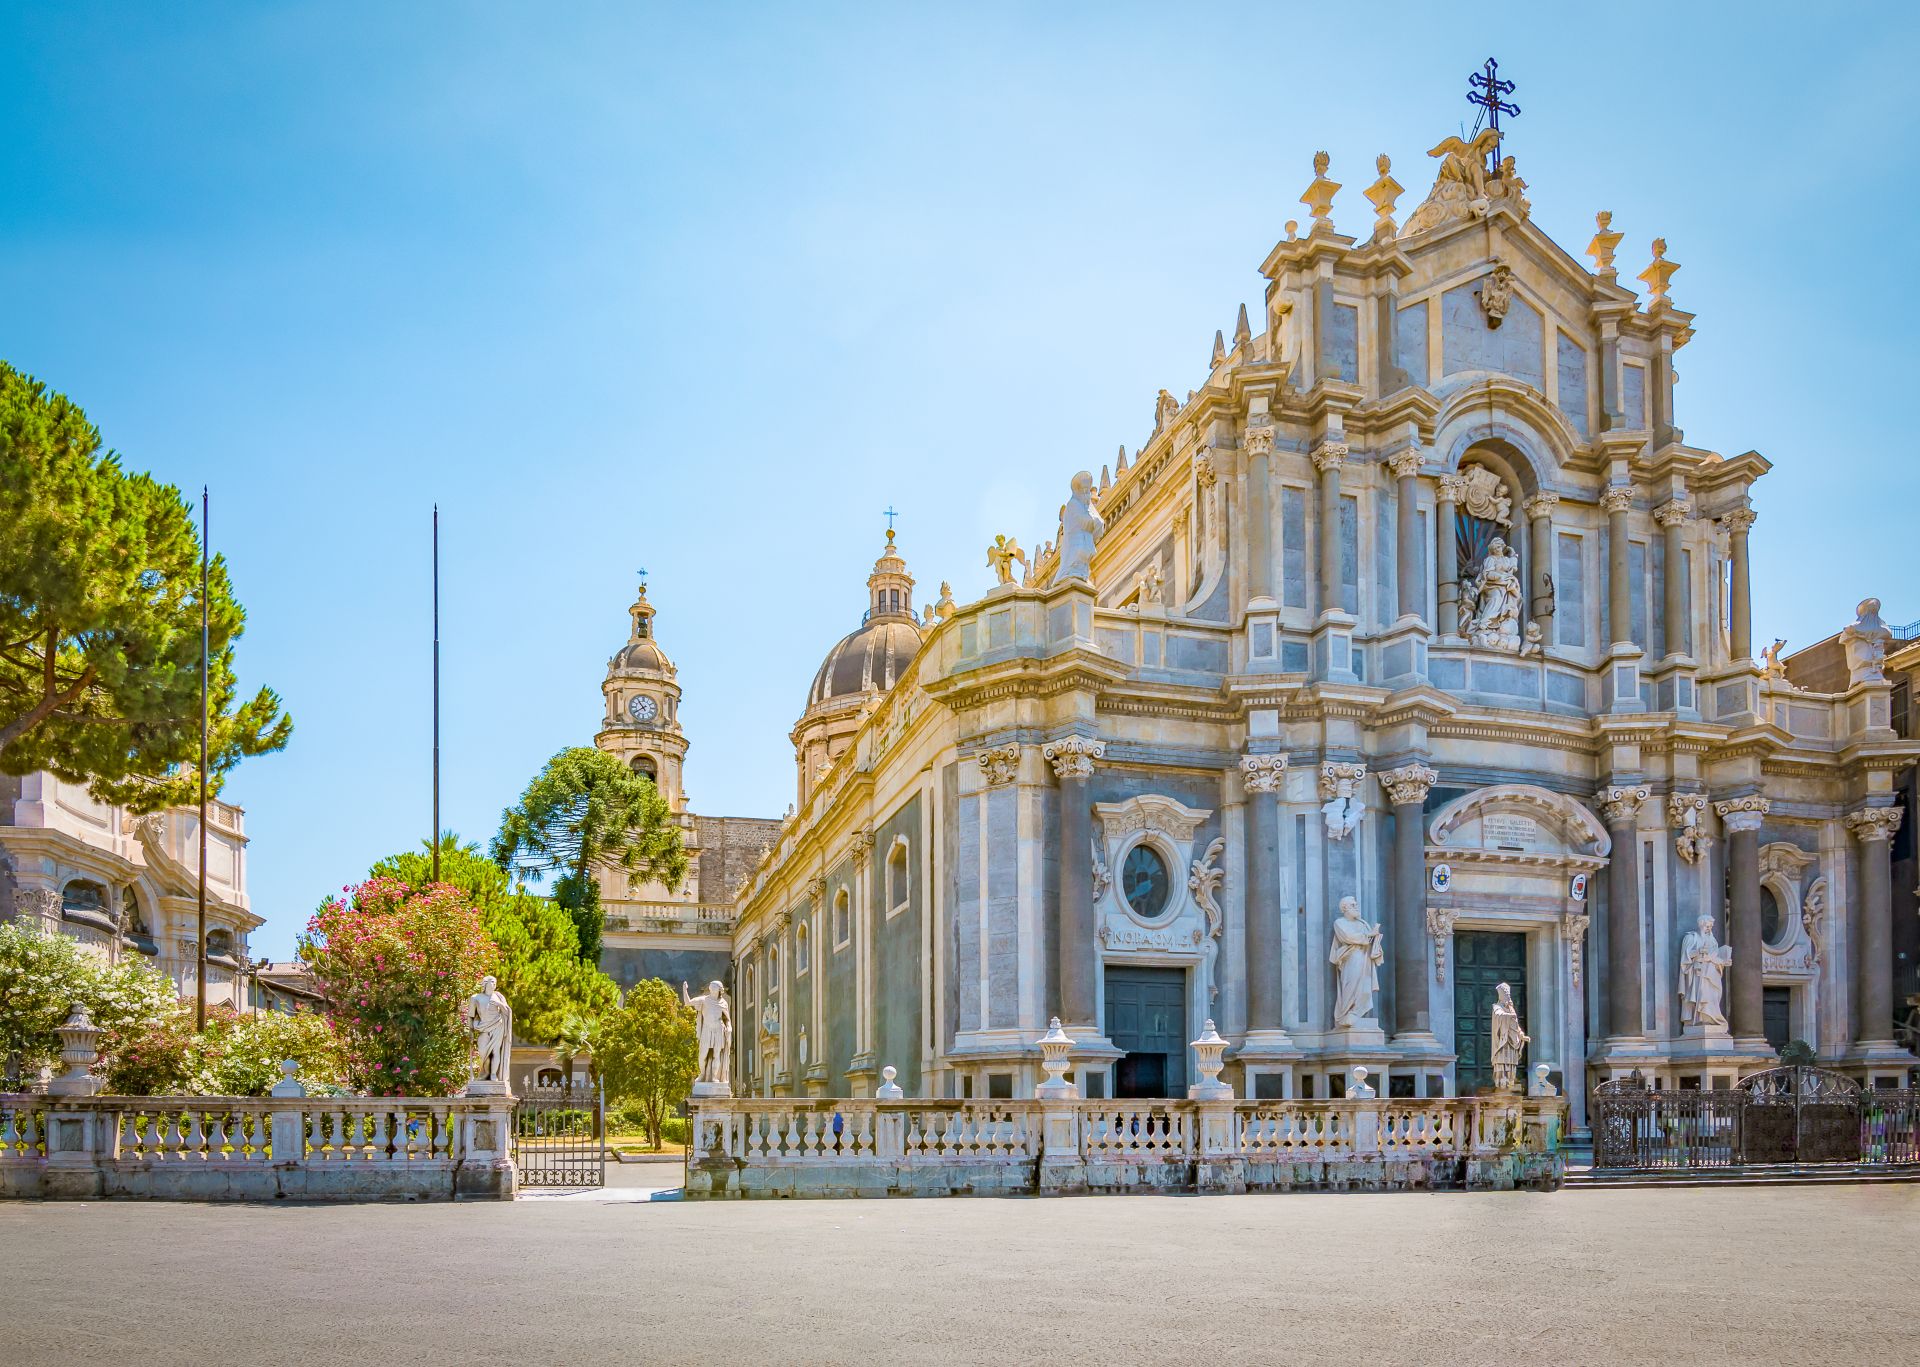 Piazza del Duomo con la Cattedrale di Santa Agata a Catania